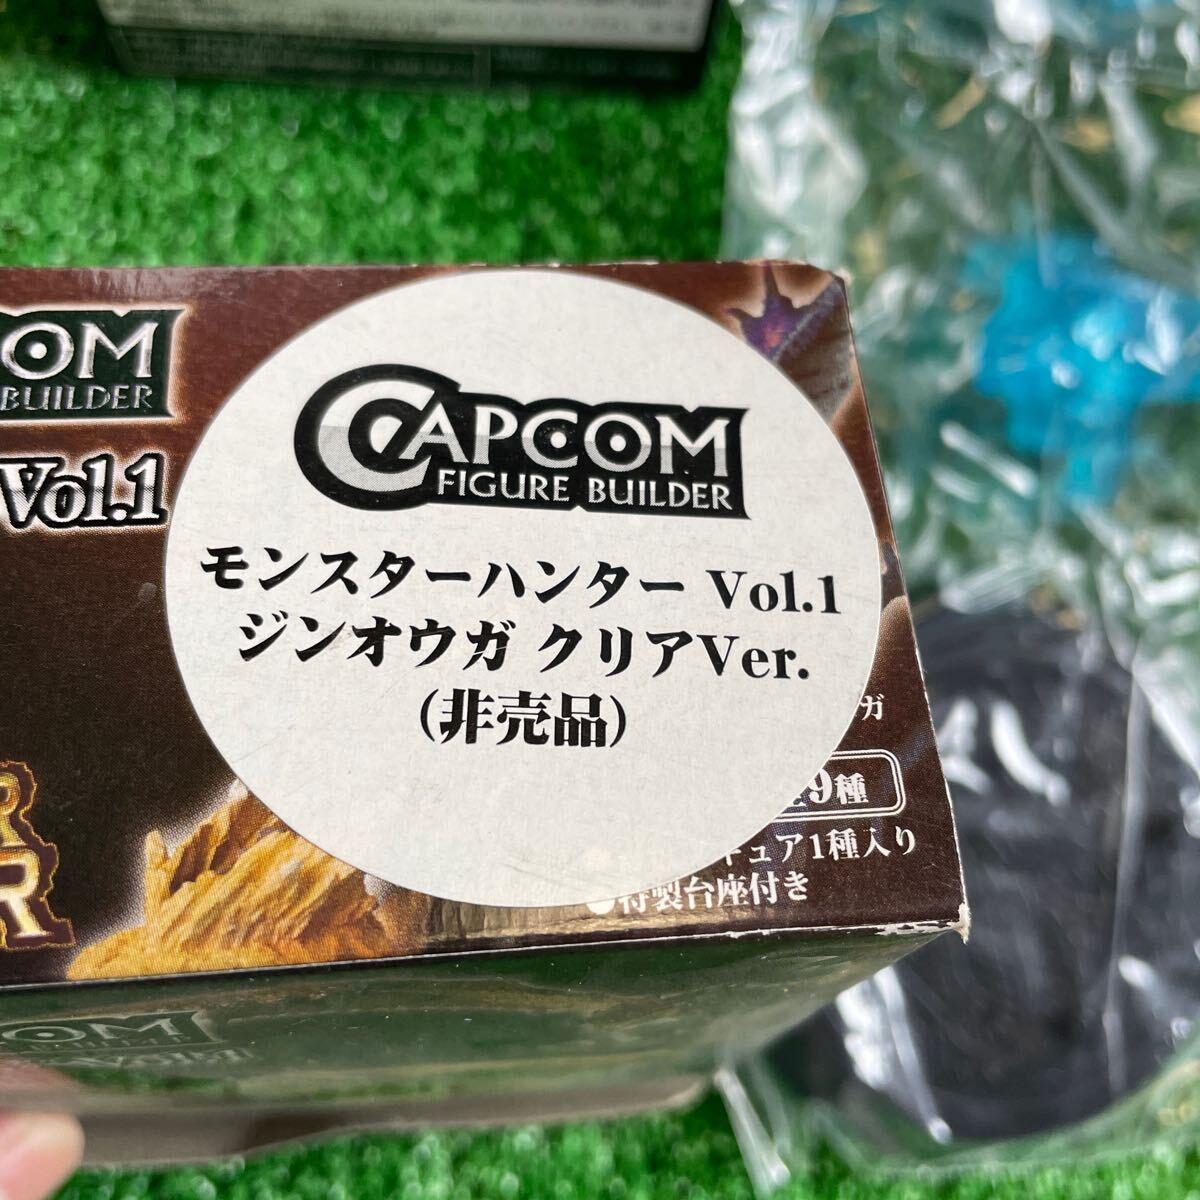 CAPCOM Monstar Hunter Vol.1 стандартный модель Gin ouga прозрачный ver. не продается shengao Len 